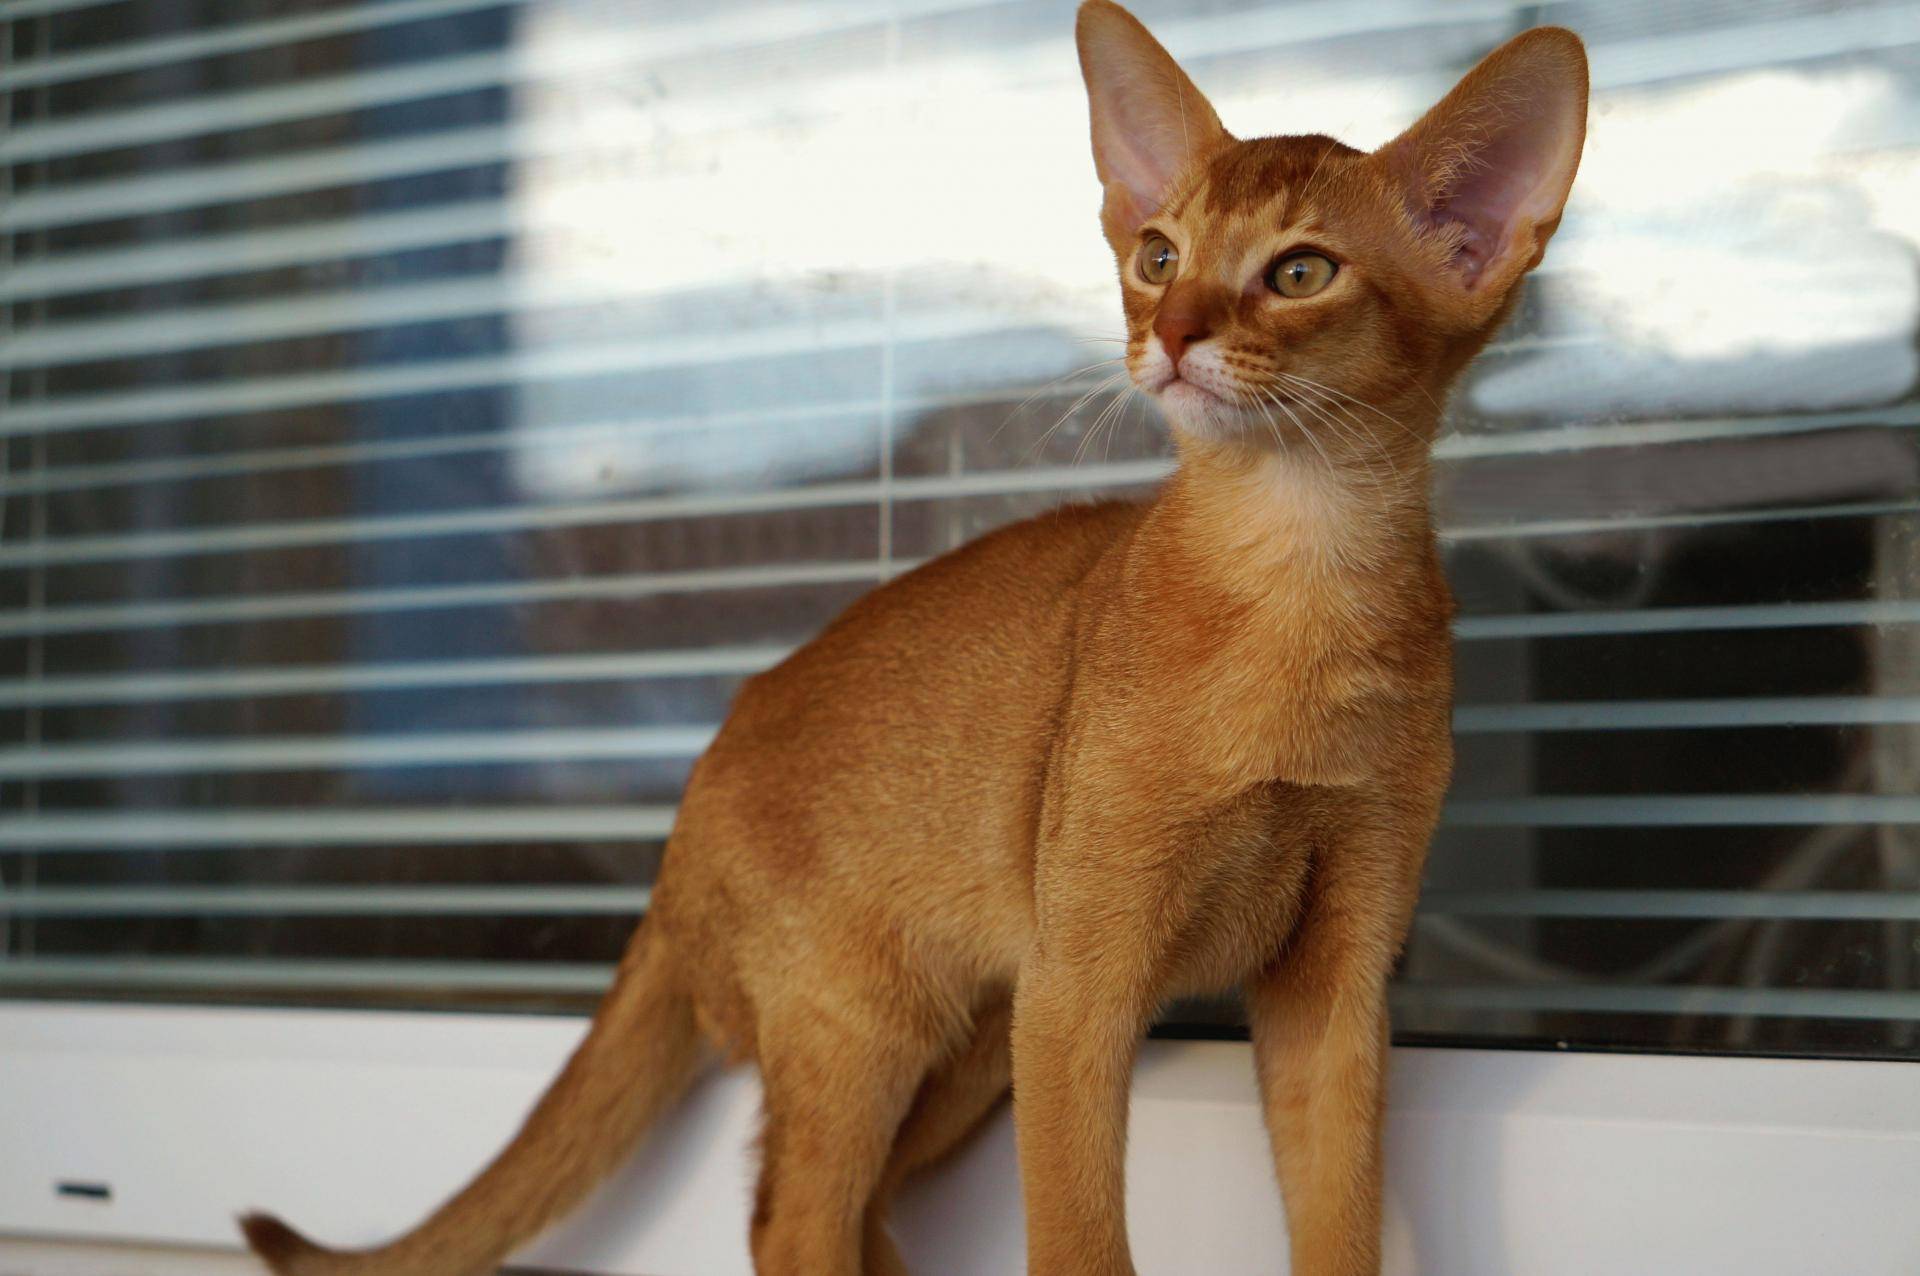 Абиссинская порода кошек - описание породы, характеристики, фото